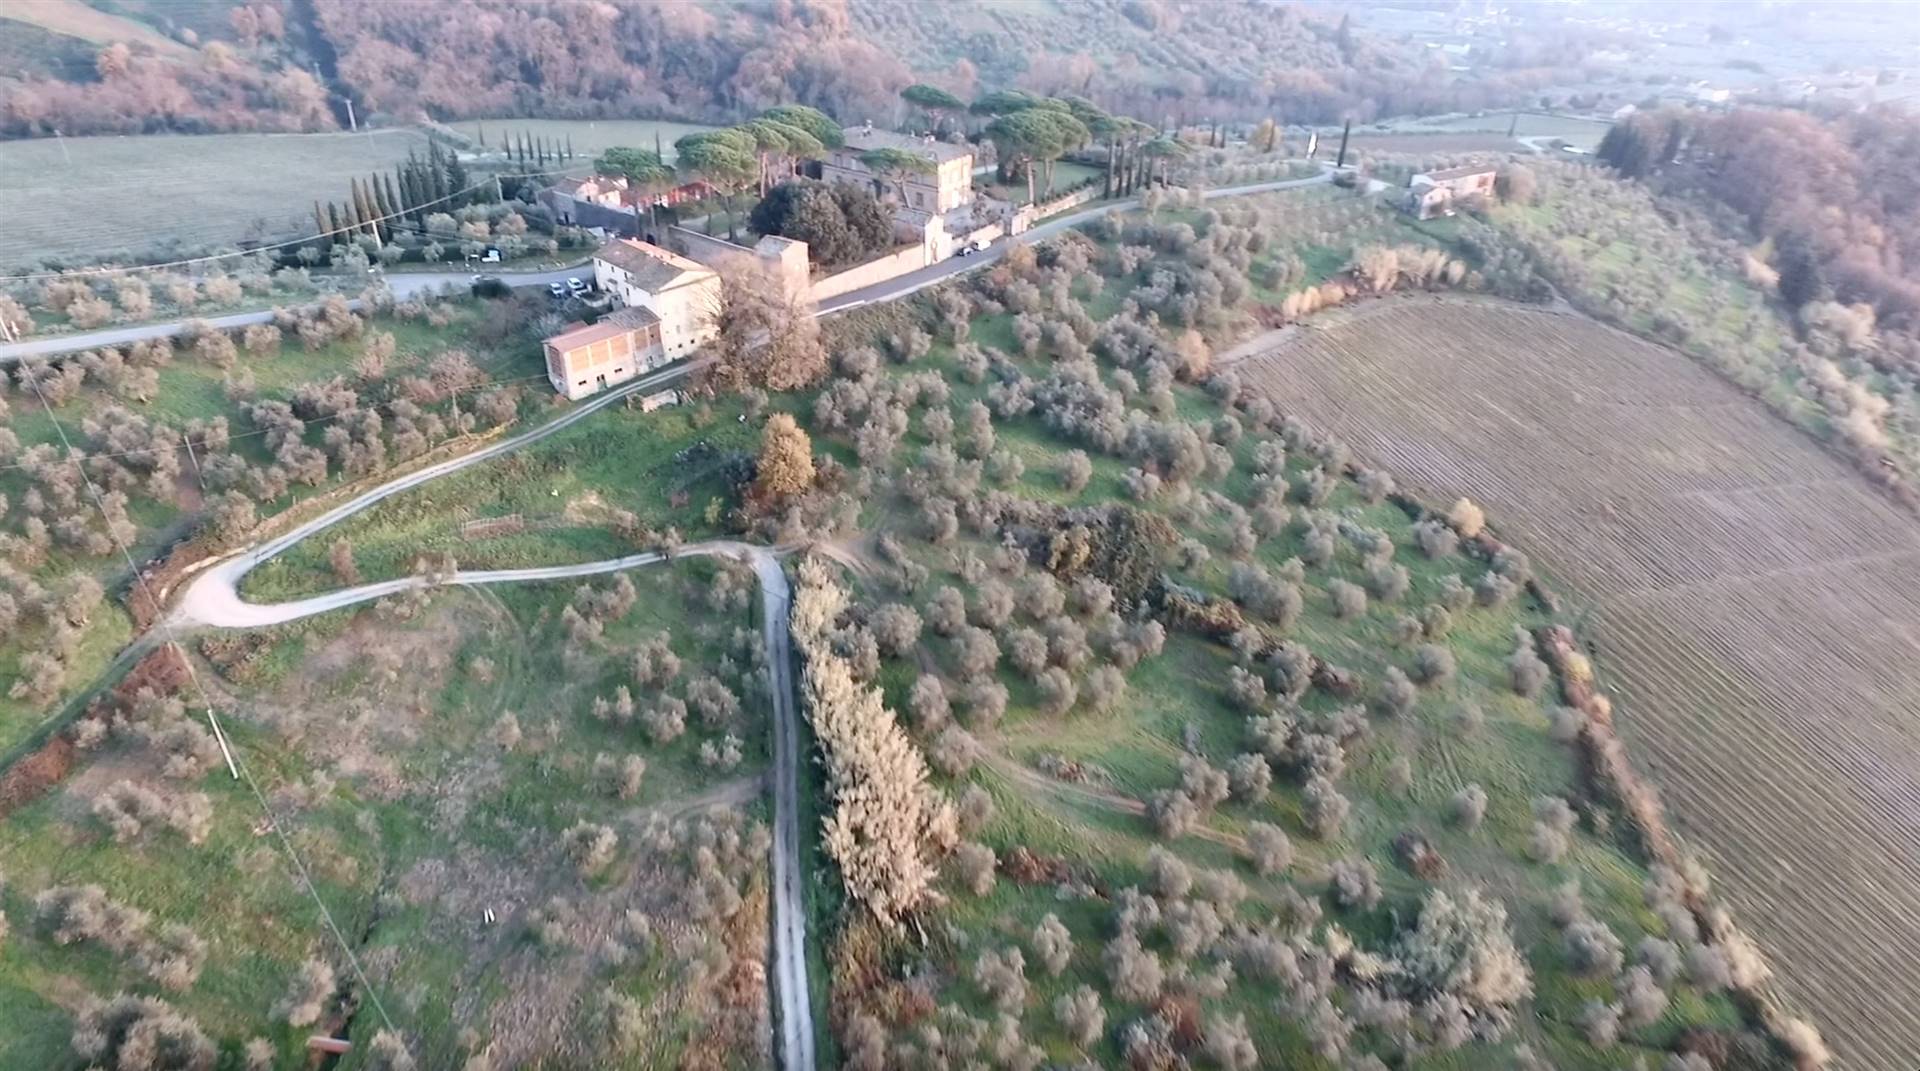 Situata a 11 km dal centro storico di Lucca, alle pendici dei monti delle Pizzorne e in posizione panoramica, la Casa del Topo è un fabbricato fuori 